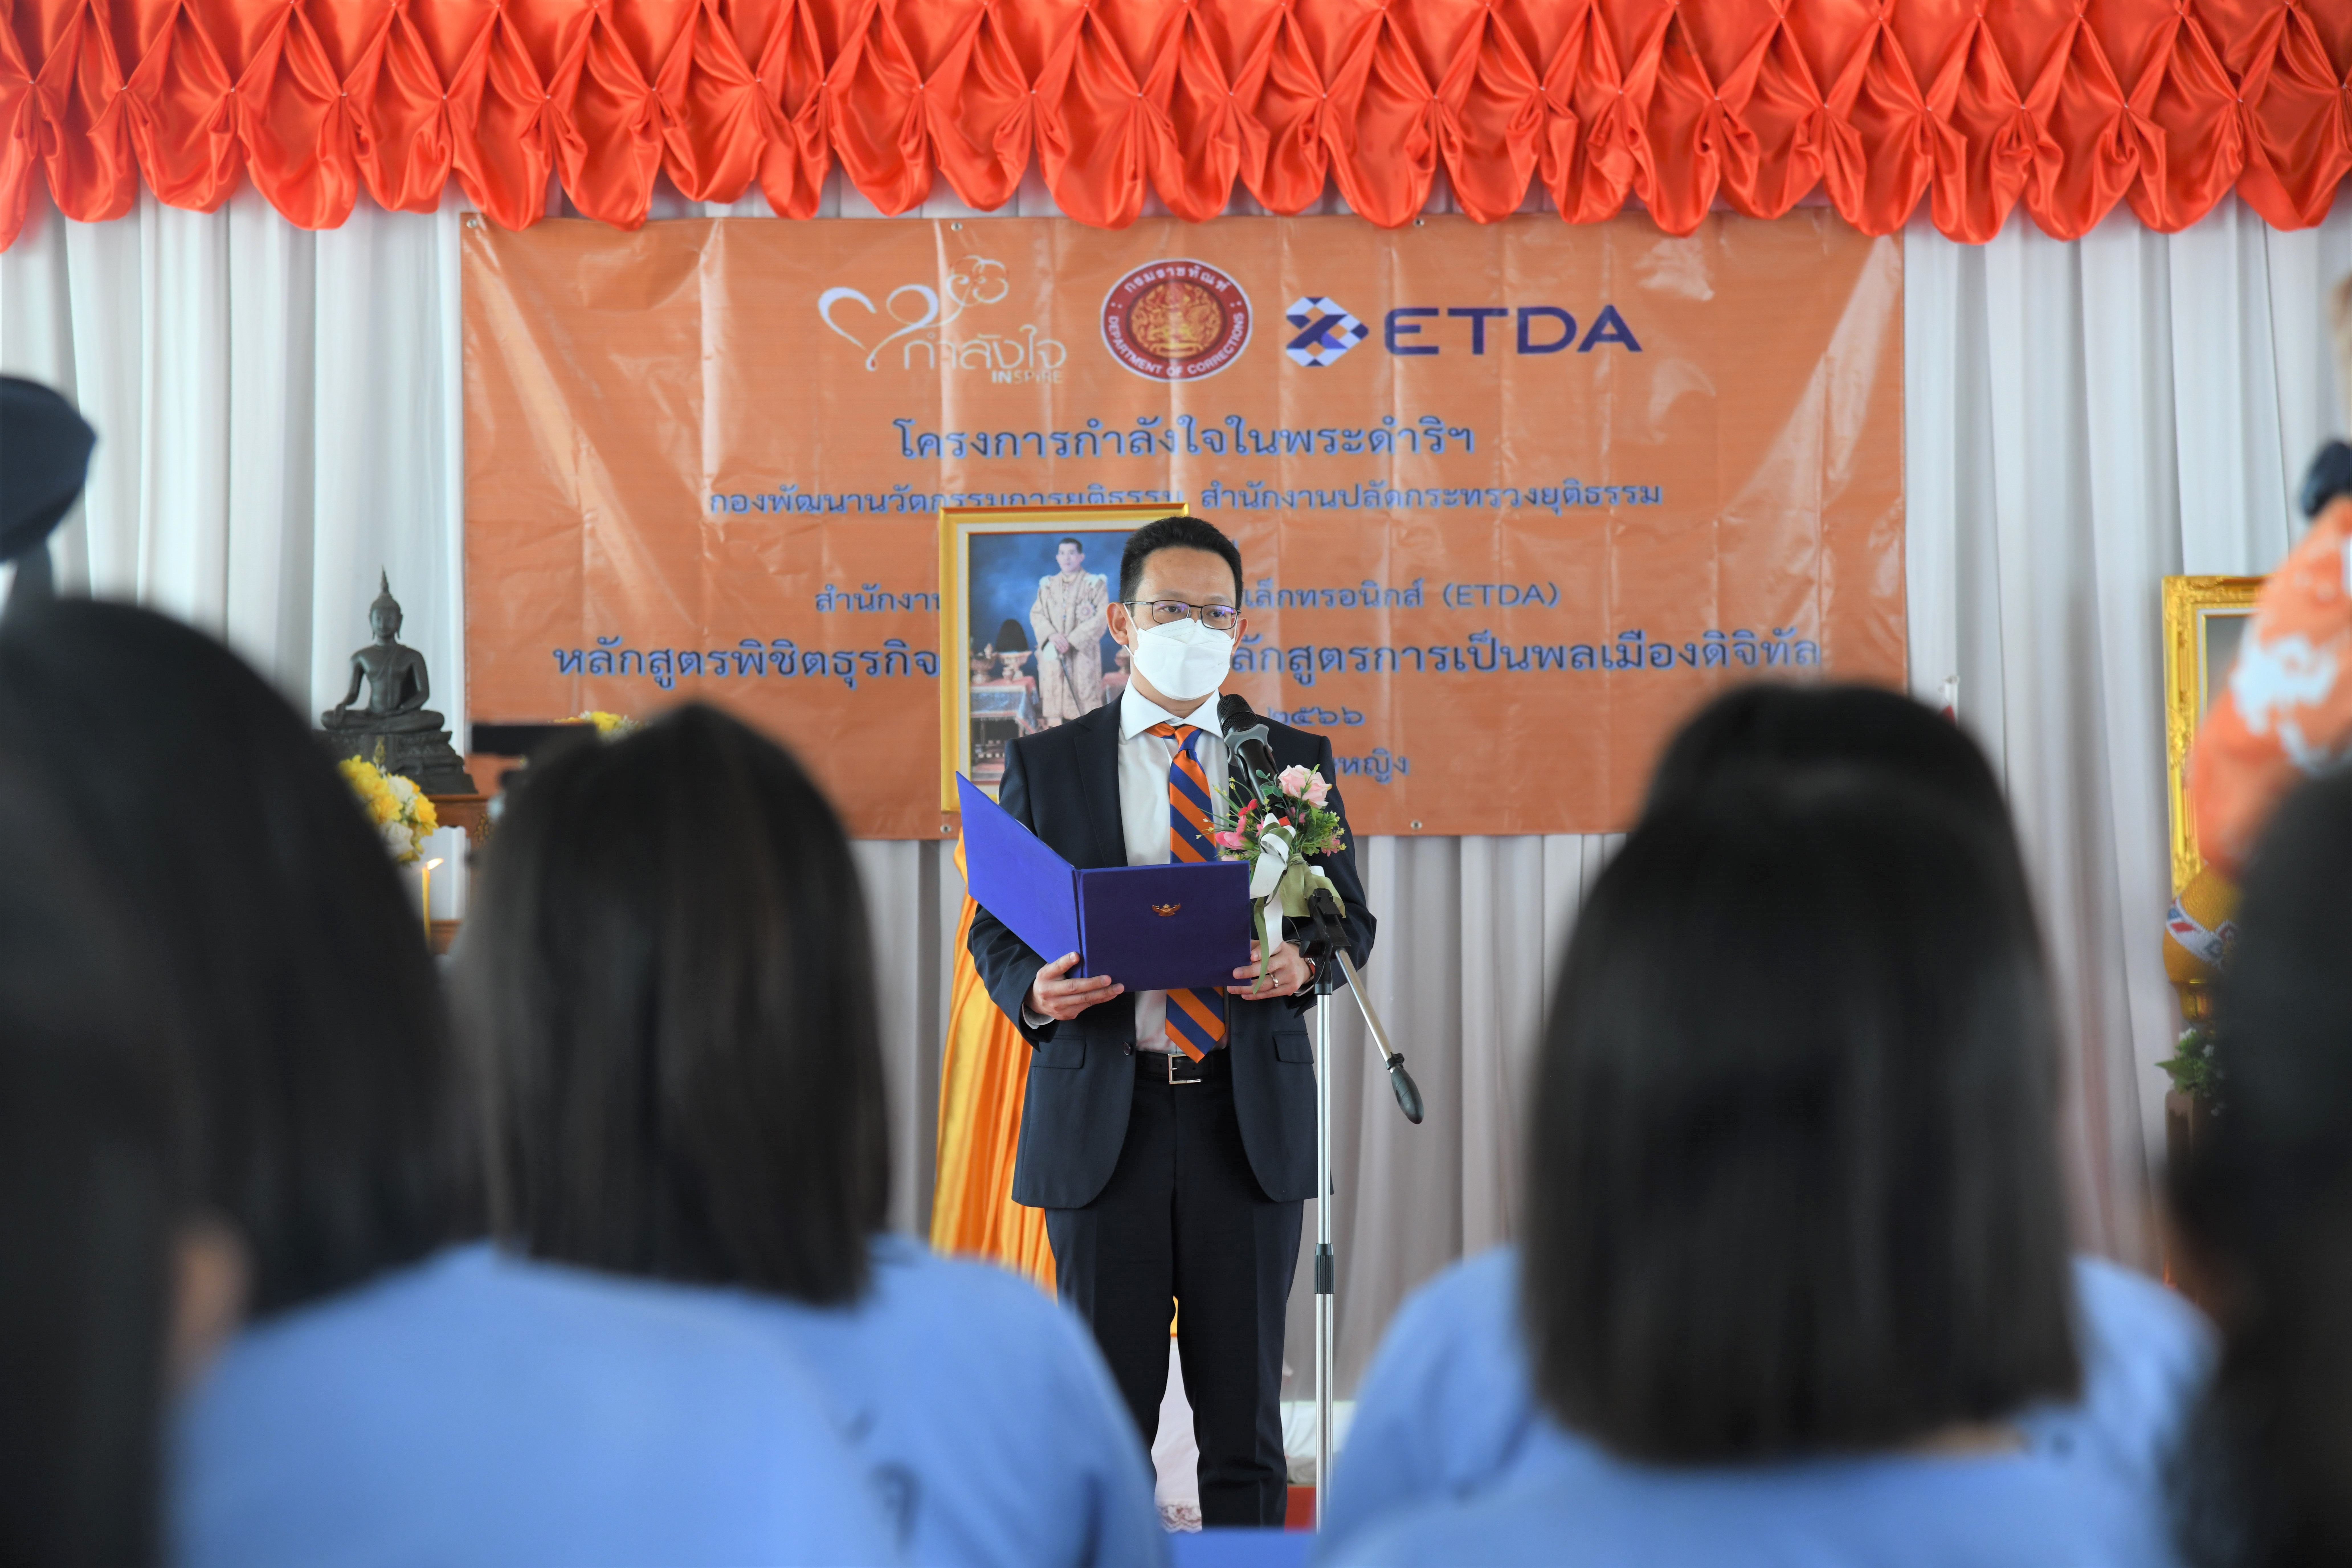 ETDA ร่วมกับ โครงการกำลังใจฯ อบรมหลักสูตรพิชิตธุรกิจออนไลน์ และหลักสูตรการเป็นพลเมืองดิจิทัล ณ ทัณฑสถานบำบัดพิเศษหญิง ขยายการเรียนรู้ สู่การพัฒนาคนไทยเป็นพลเมืองดิจิทัลที่มีคุณภาพ